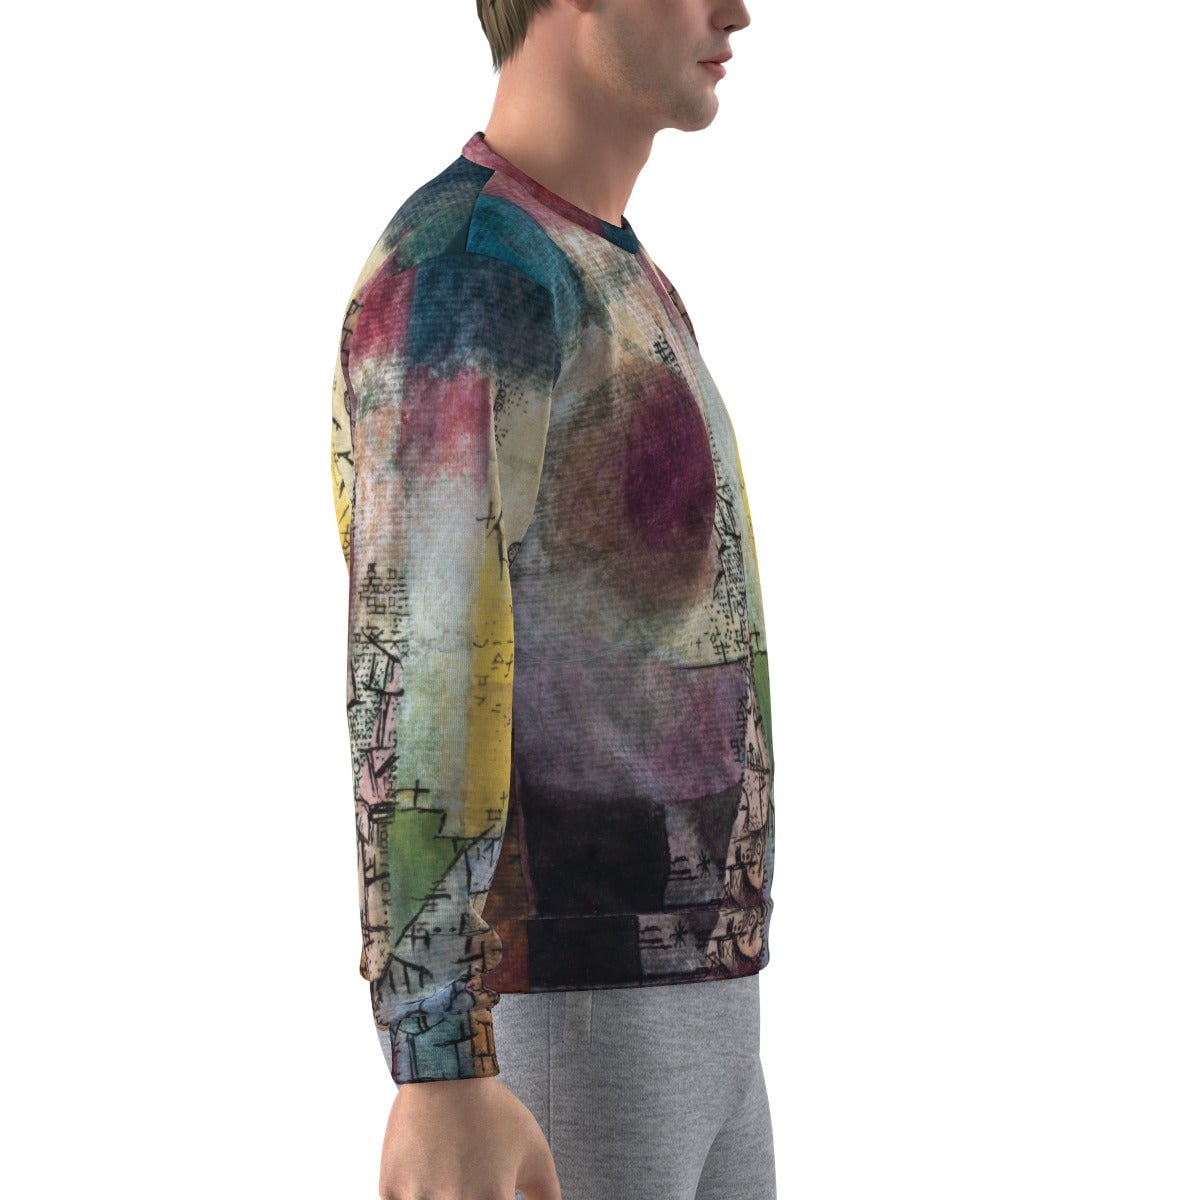 Untitled Painting Paul Klee Art Sweatshirt